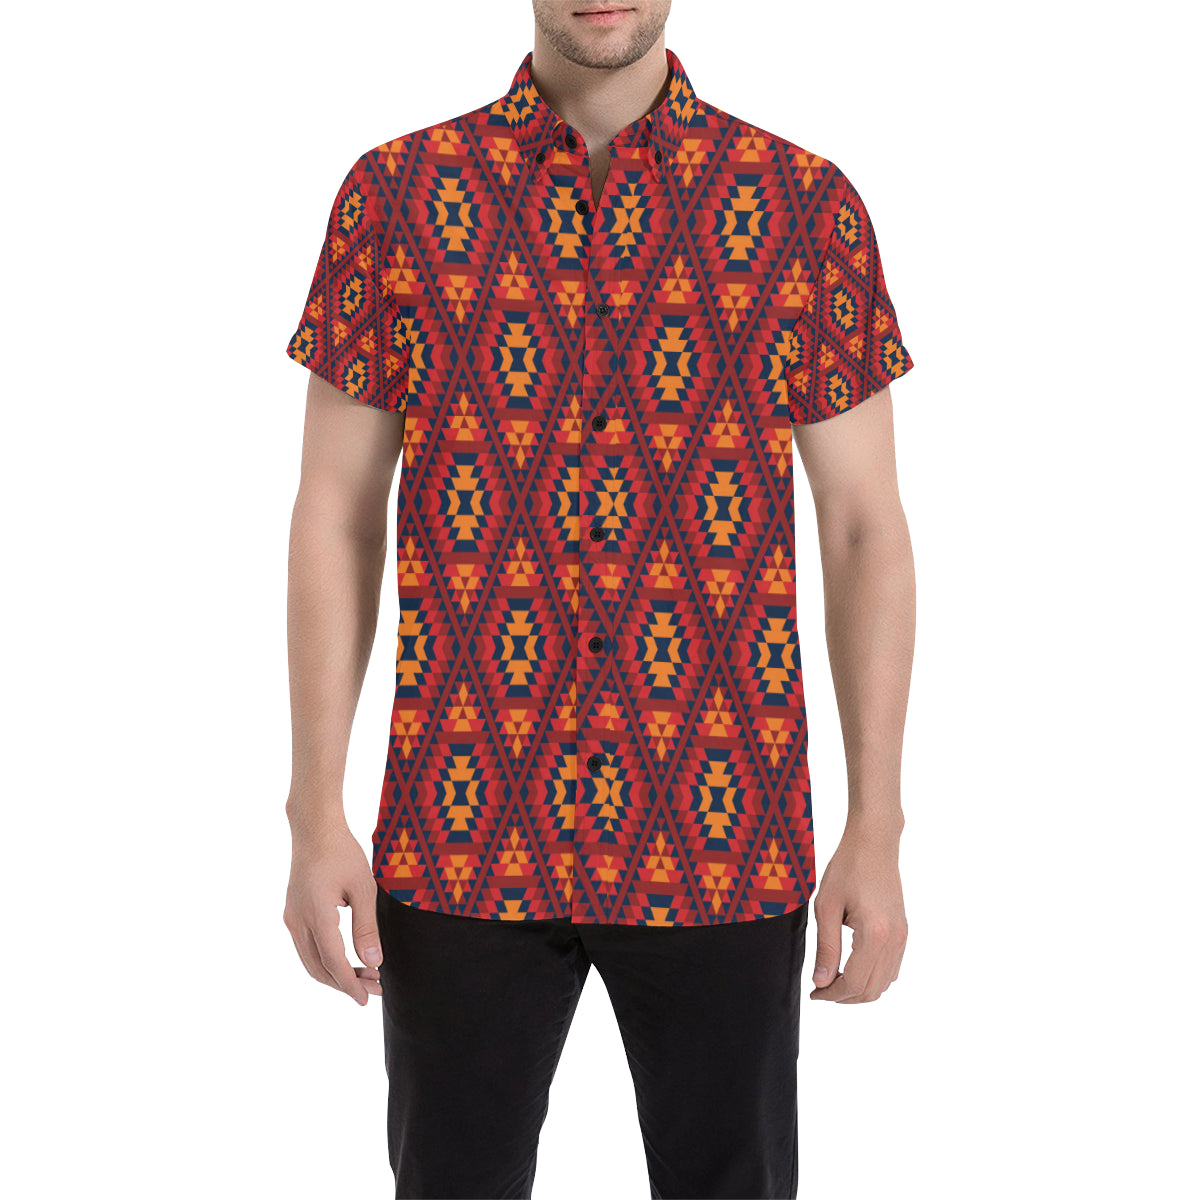 Navajo Pattern Print Design A03 Men's Short Sleeve Button Up Shirt